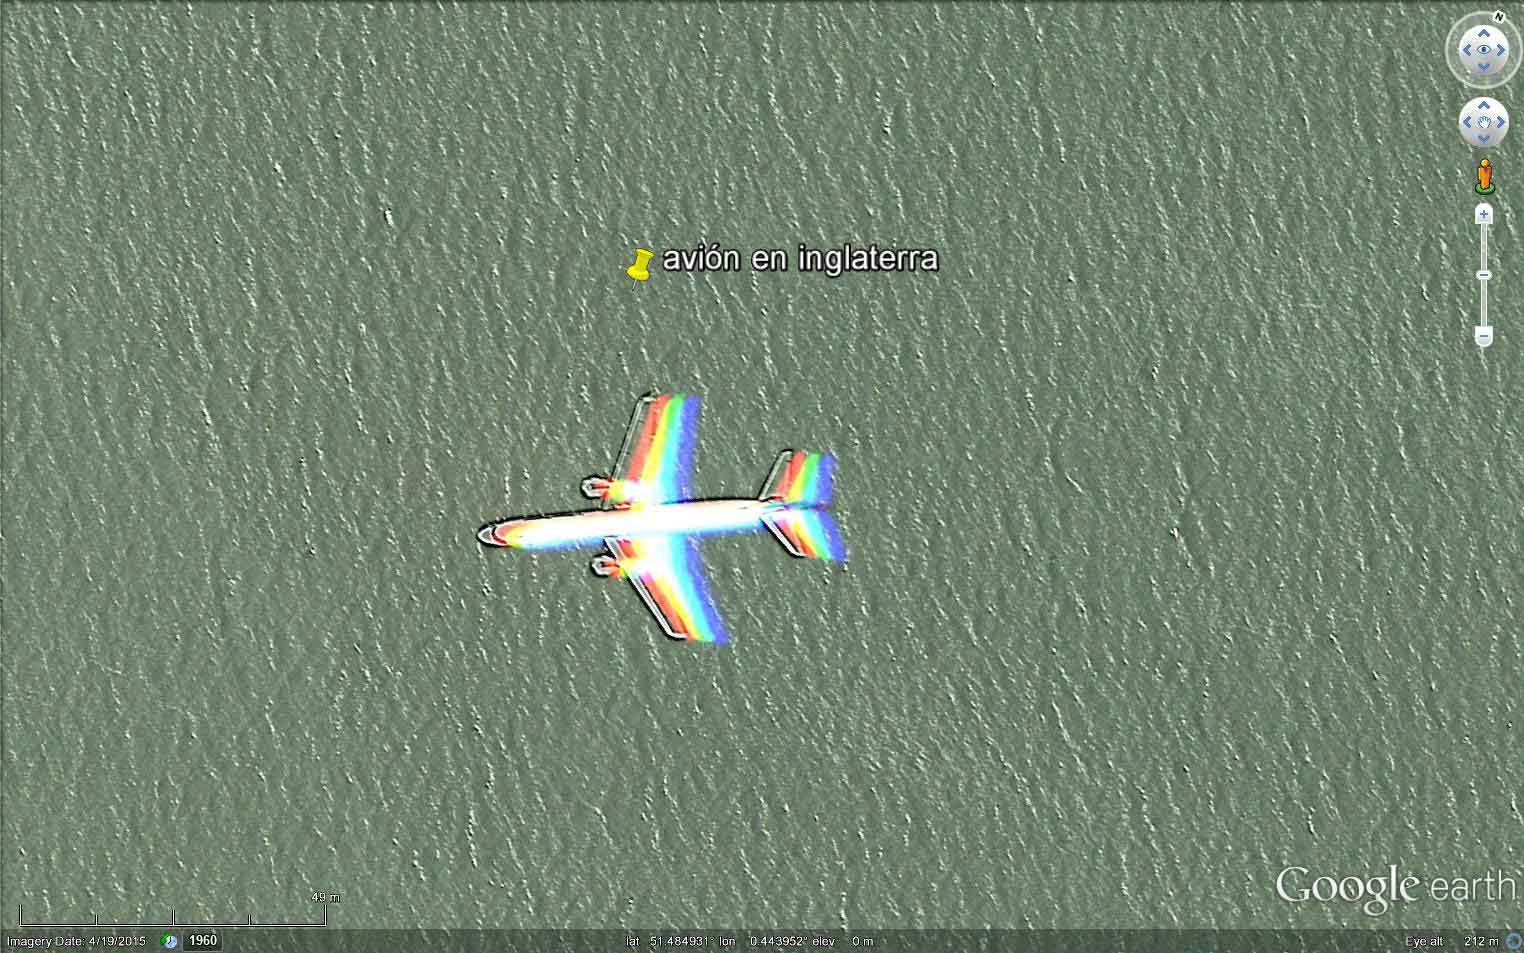 Avion sobre el puerto de Dubai 🗺️ Foro General de Google Earth 1